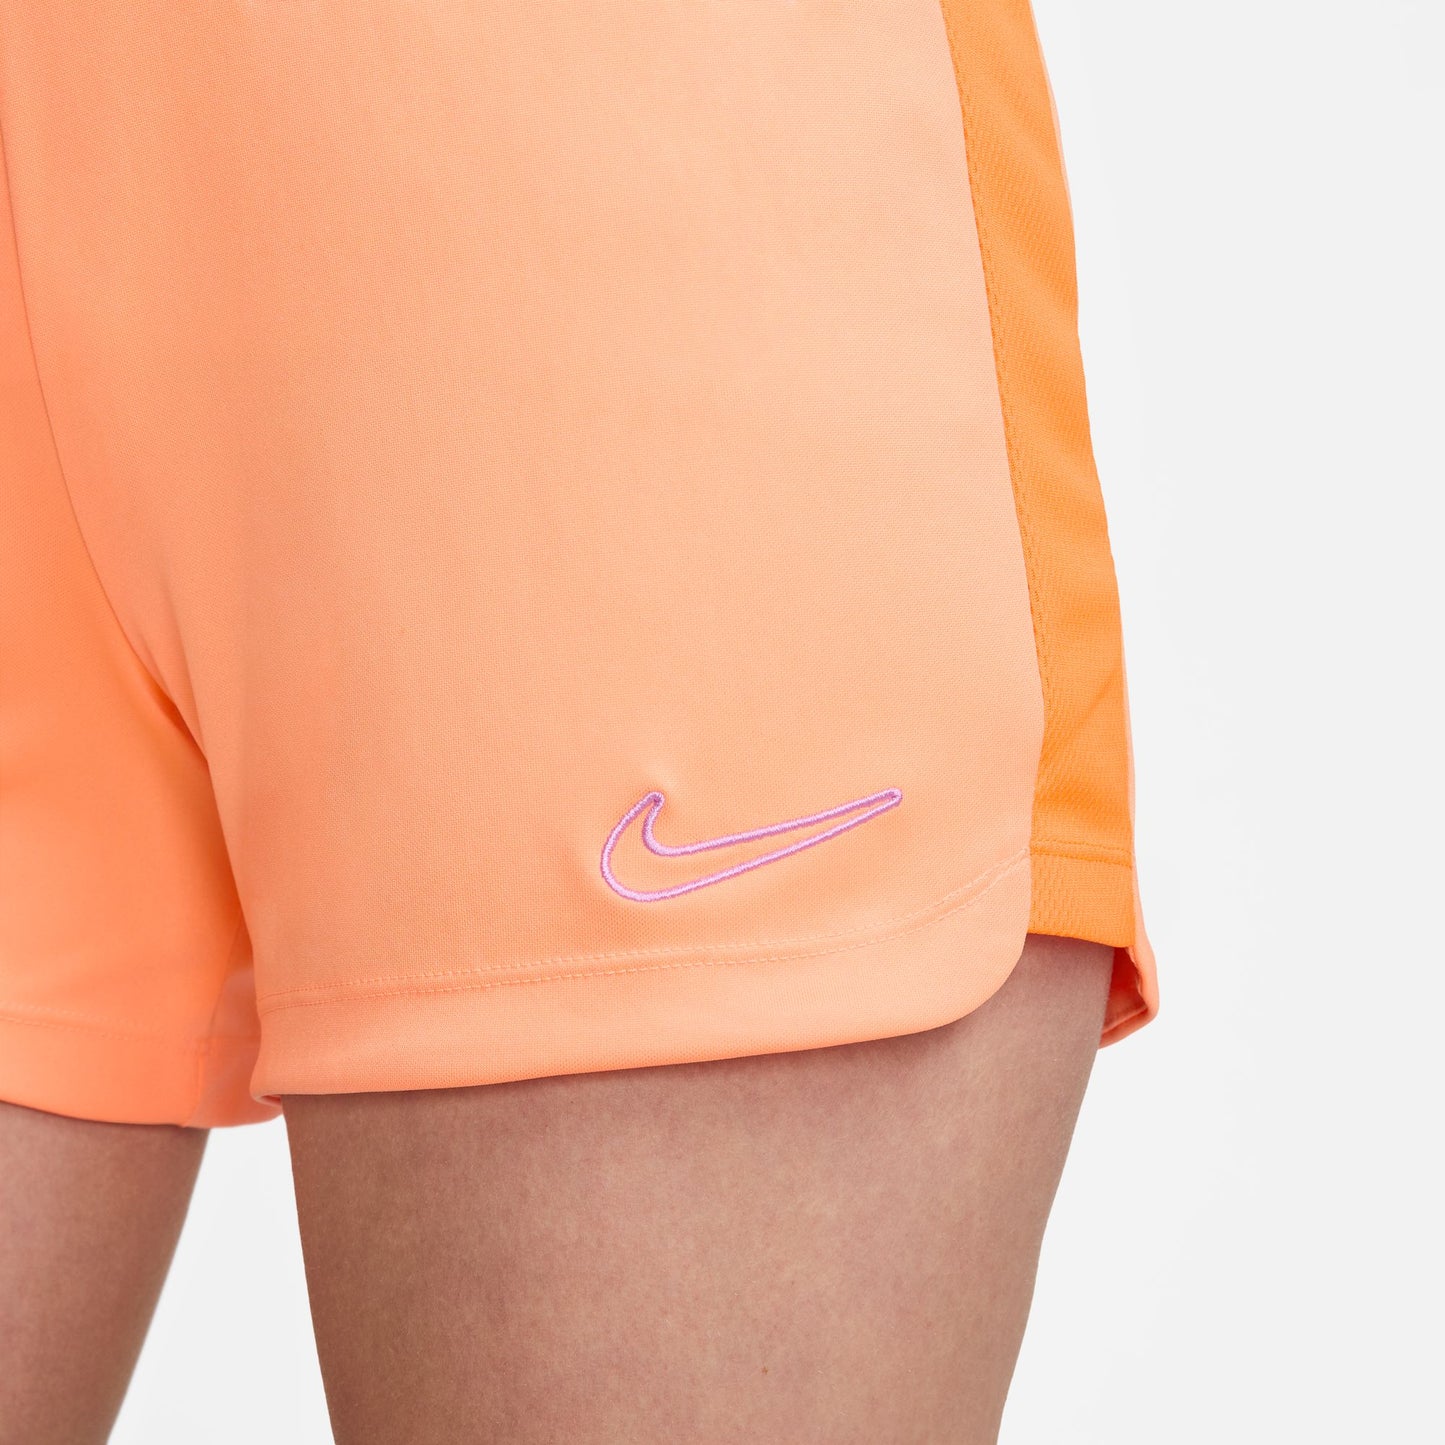 Pantalón corto de fútbol Nike Dri-FIT Academy para mujer